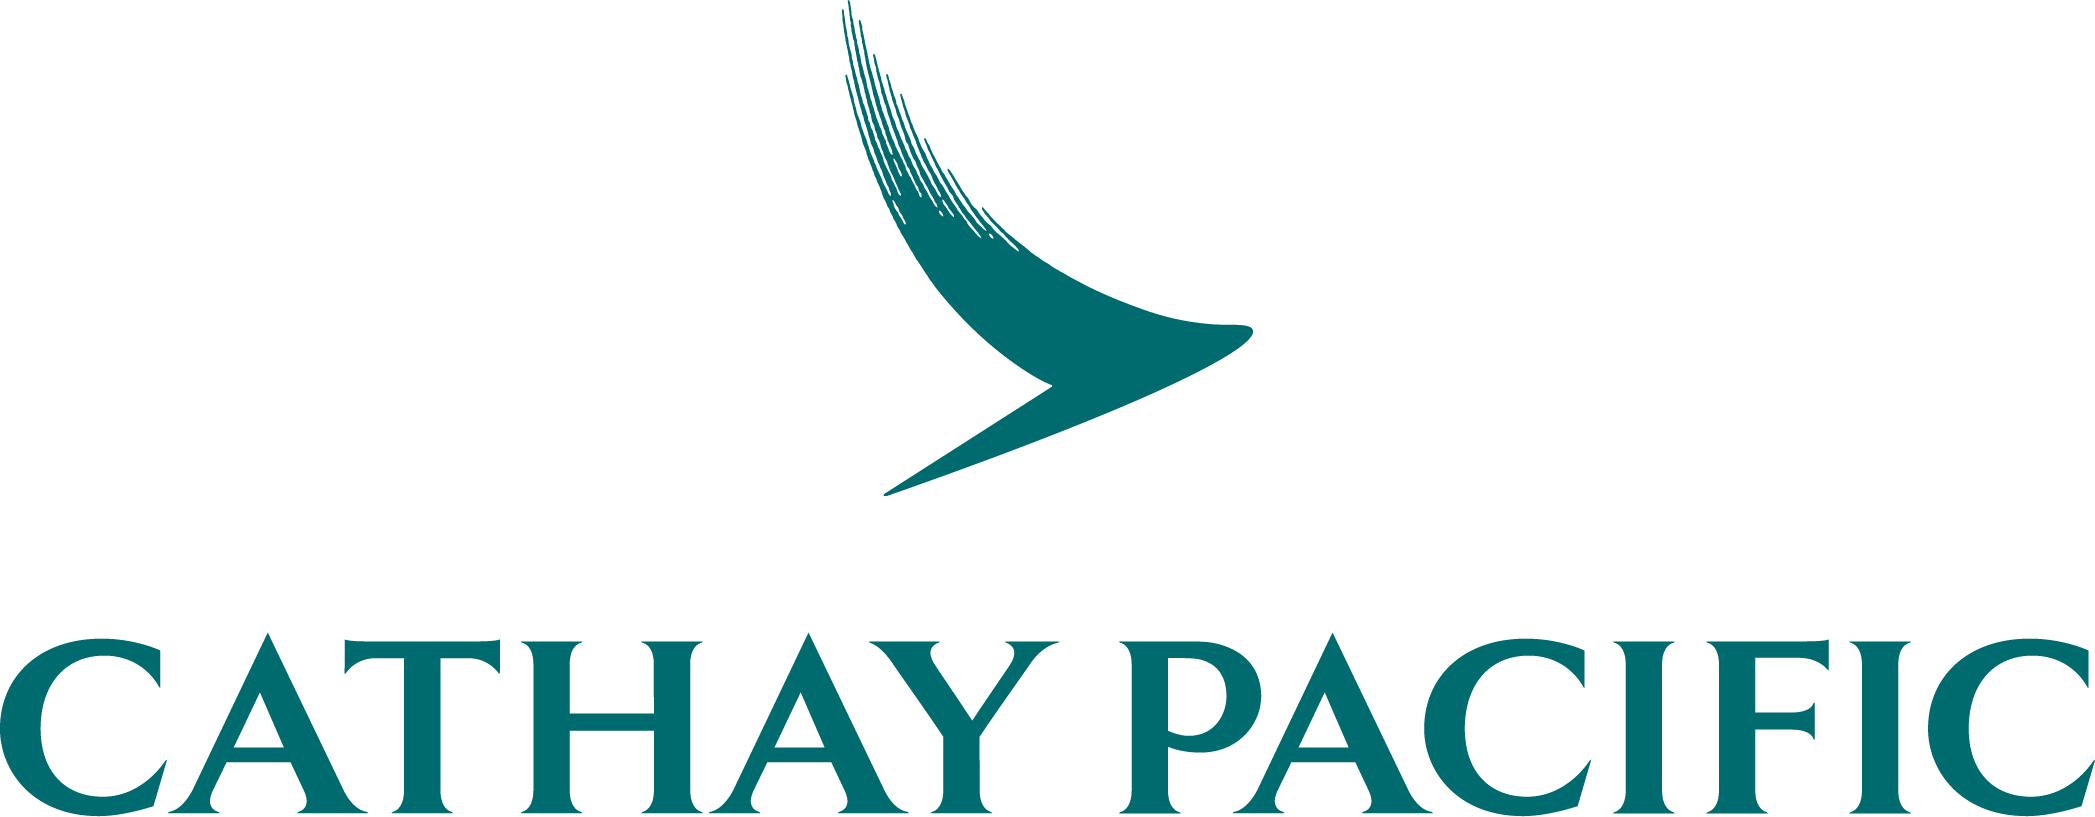 Resultado de imagen para cathay pacific logo